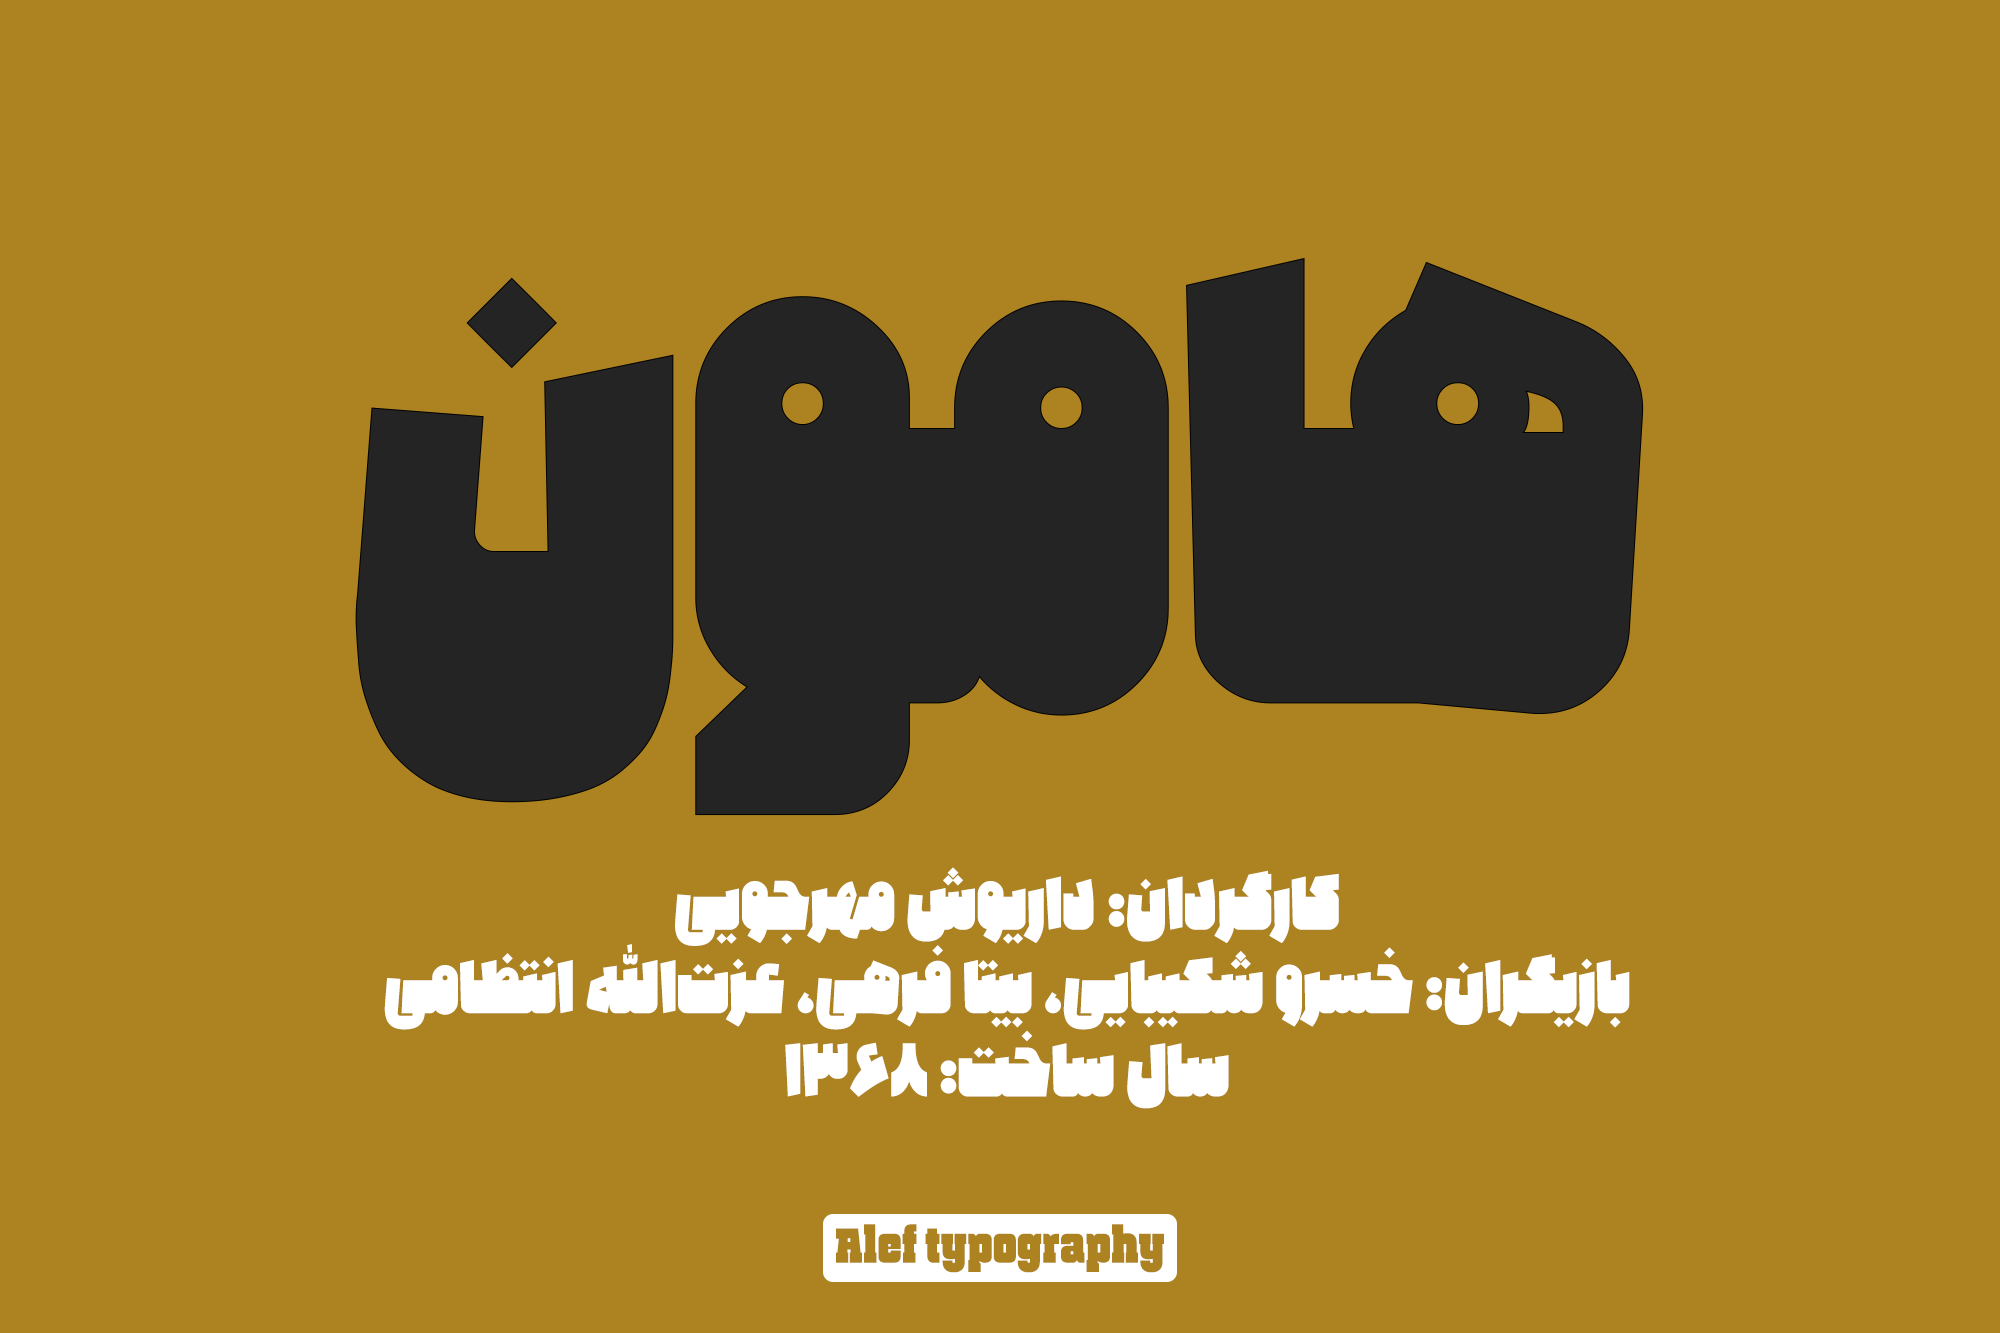 Alef-typography05